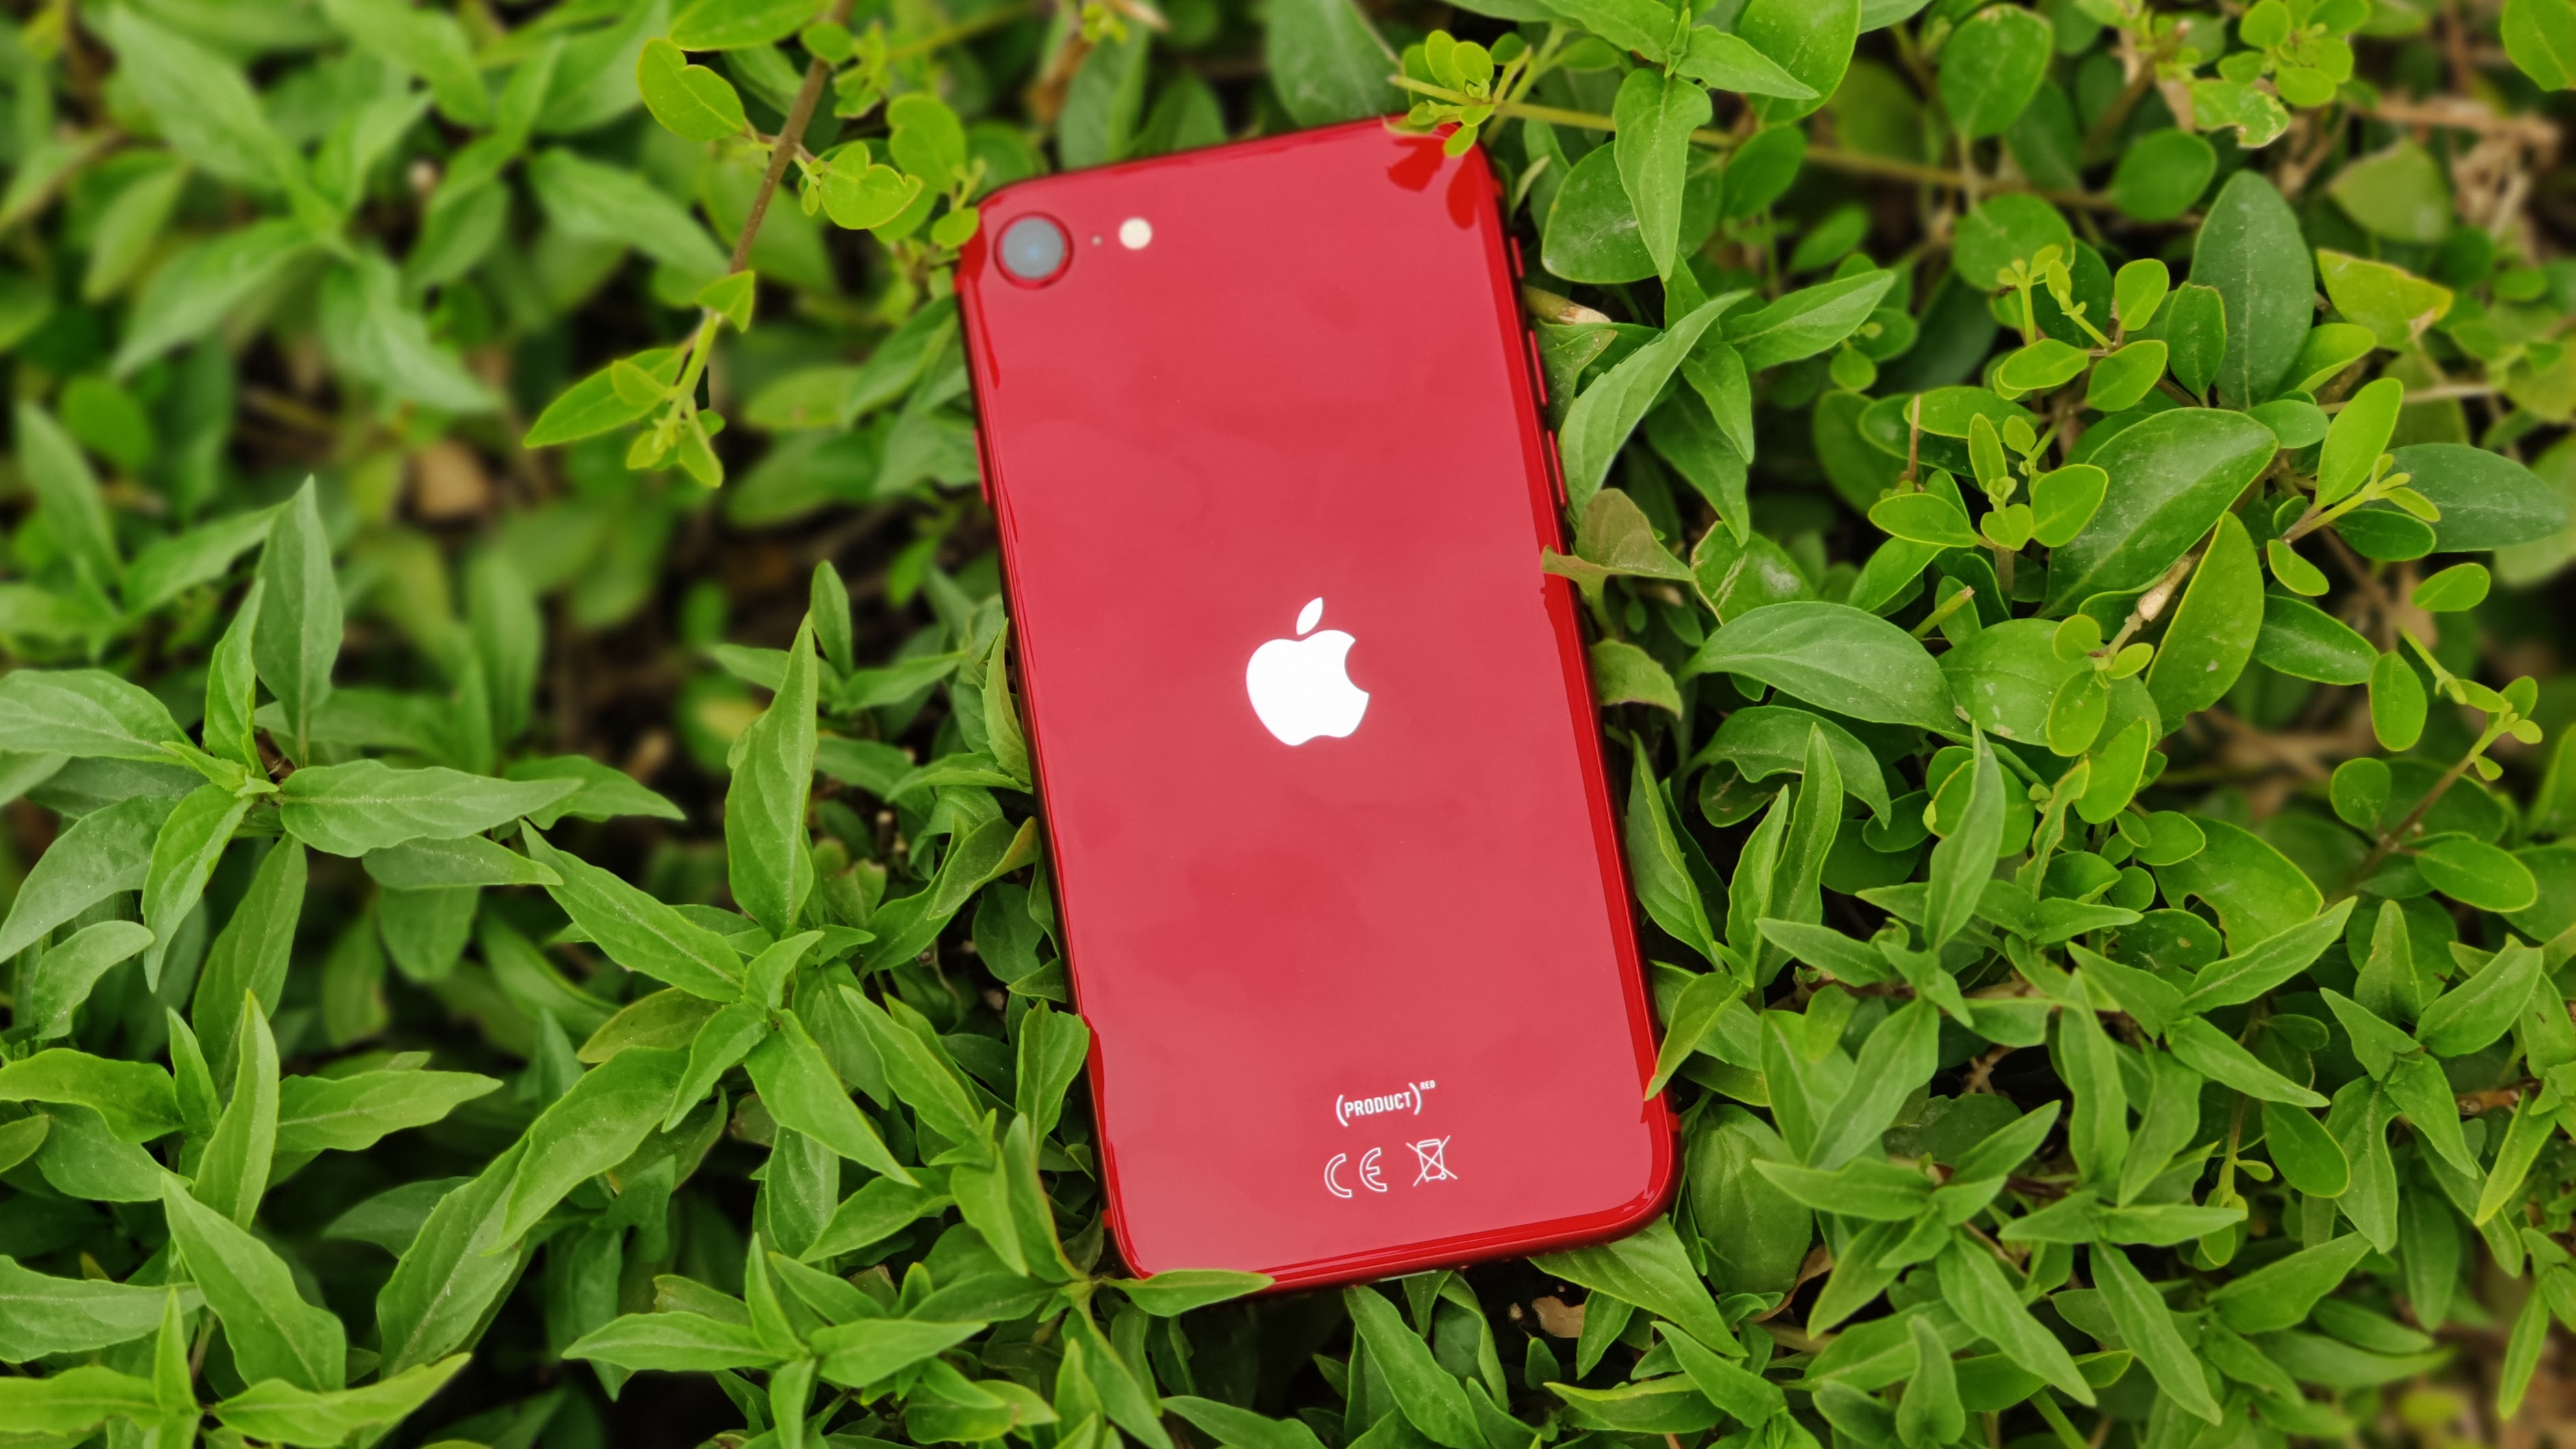 IPhone SE (2020) merah bertumpu pada tanaman hijau